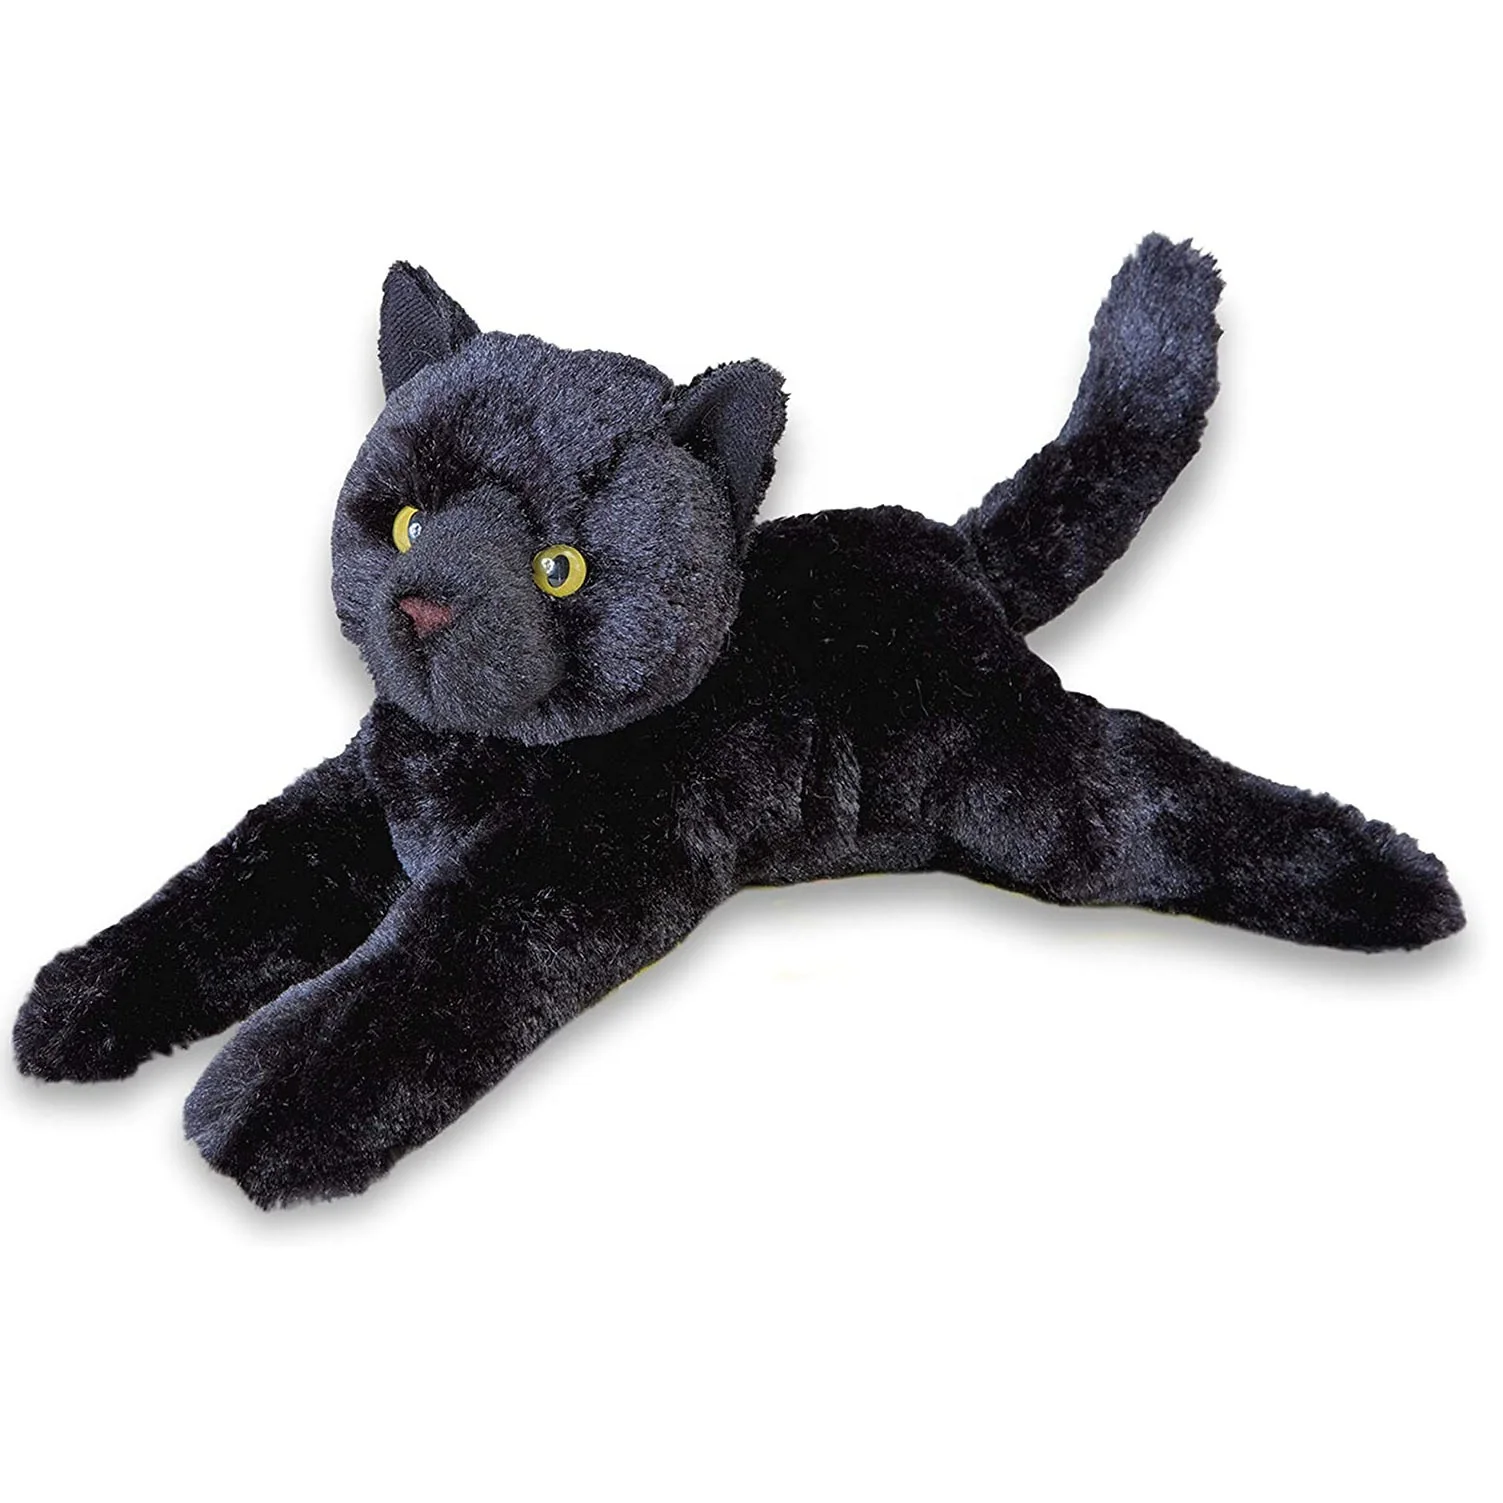 Черно плюшевая. Игрушка черный кот. Плюшевый черный кот. Реалистичные мягкие игрушки кошки. Мягкая игрушка черная кошка.